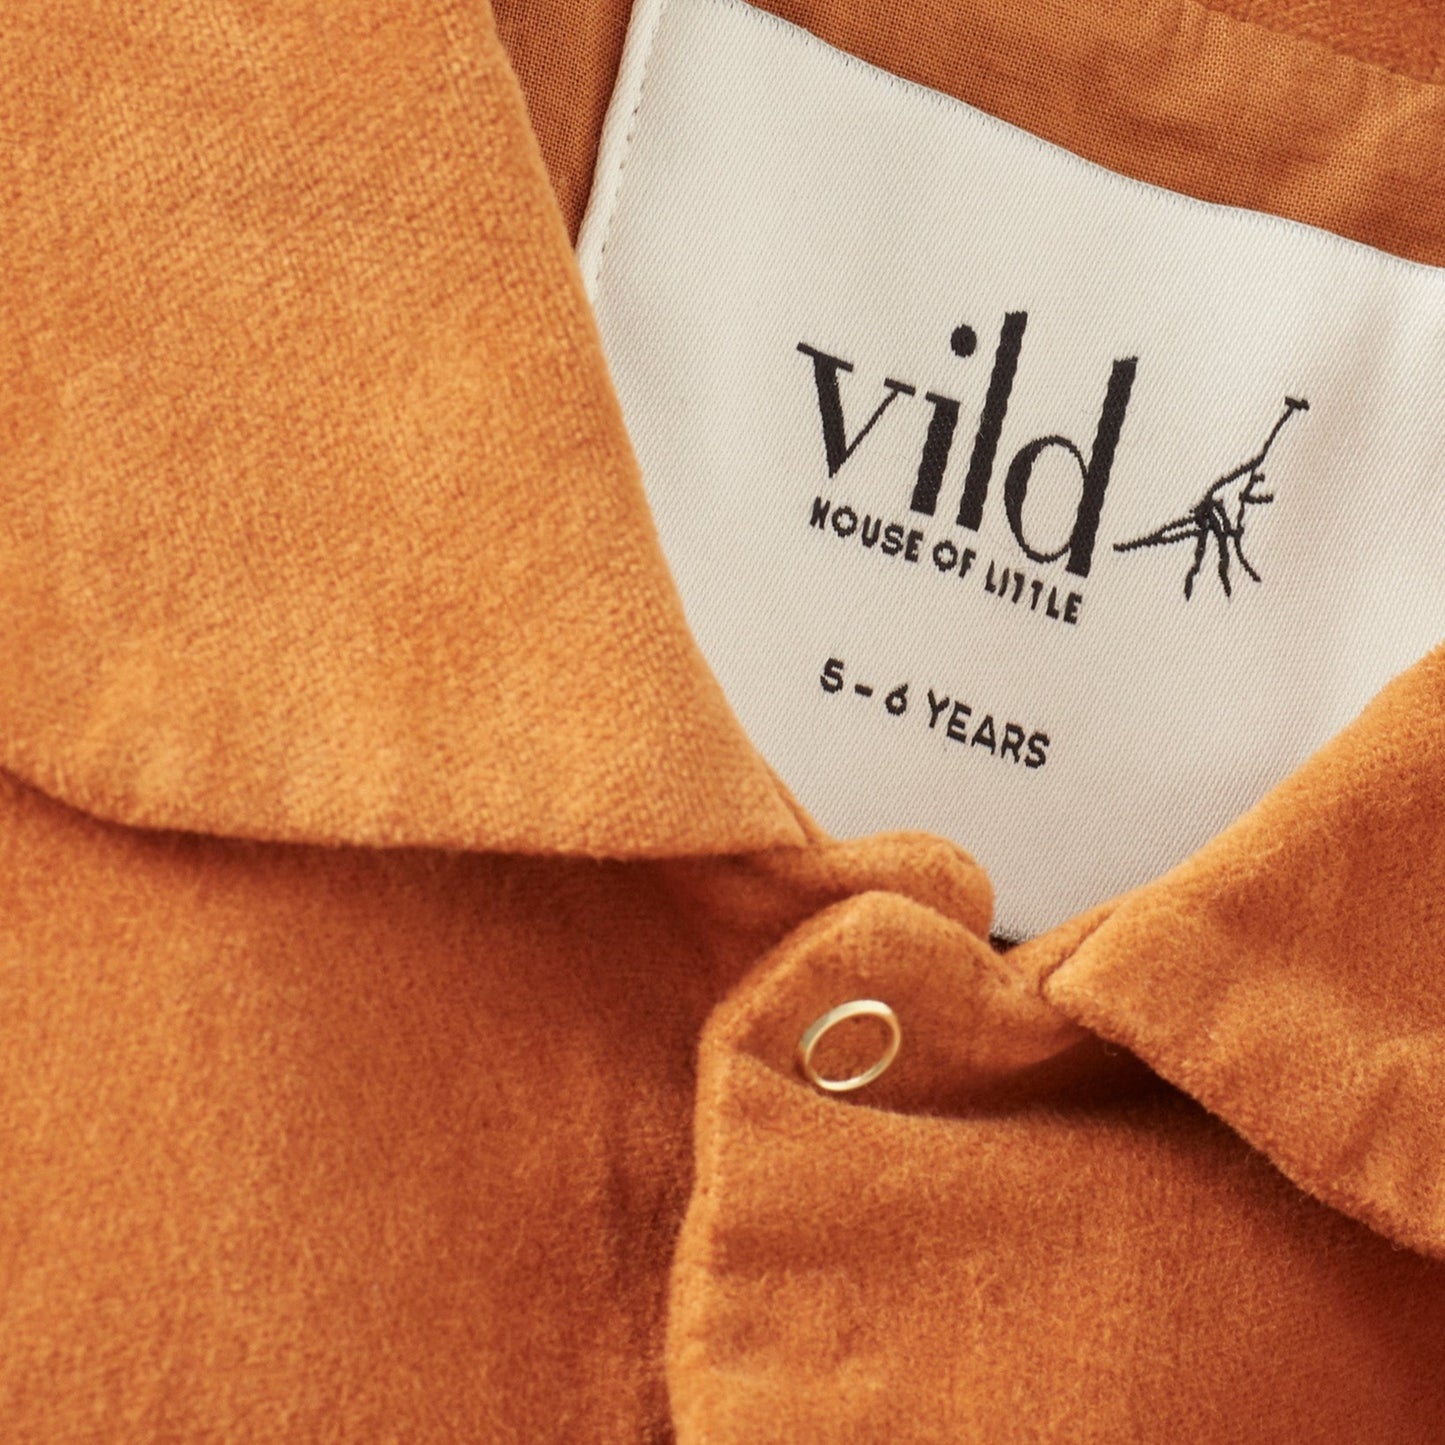 Organic Cotton Velvet Jacket by Vild House of Little